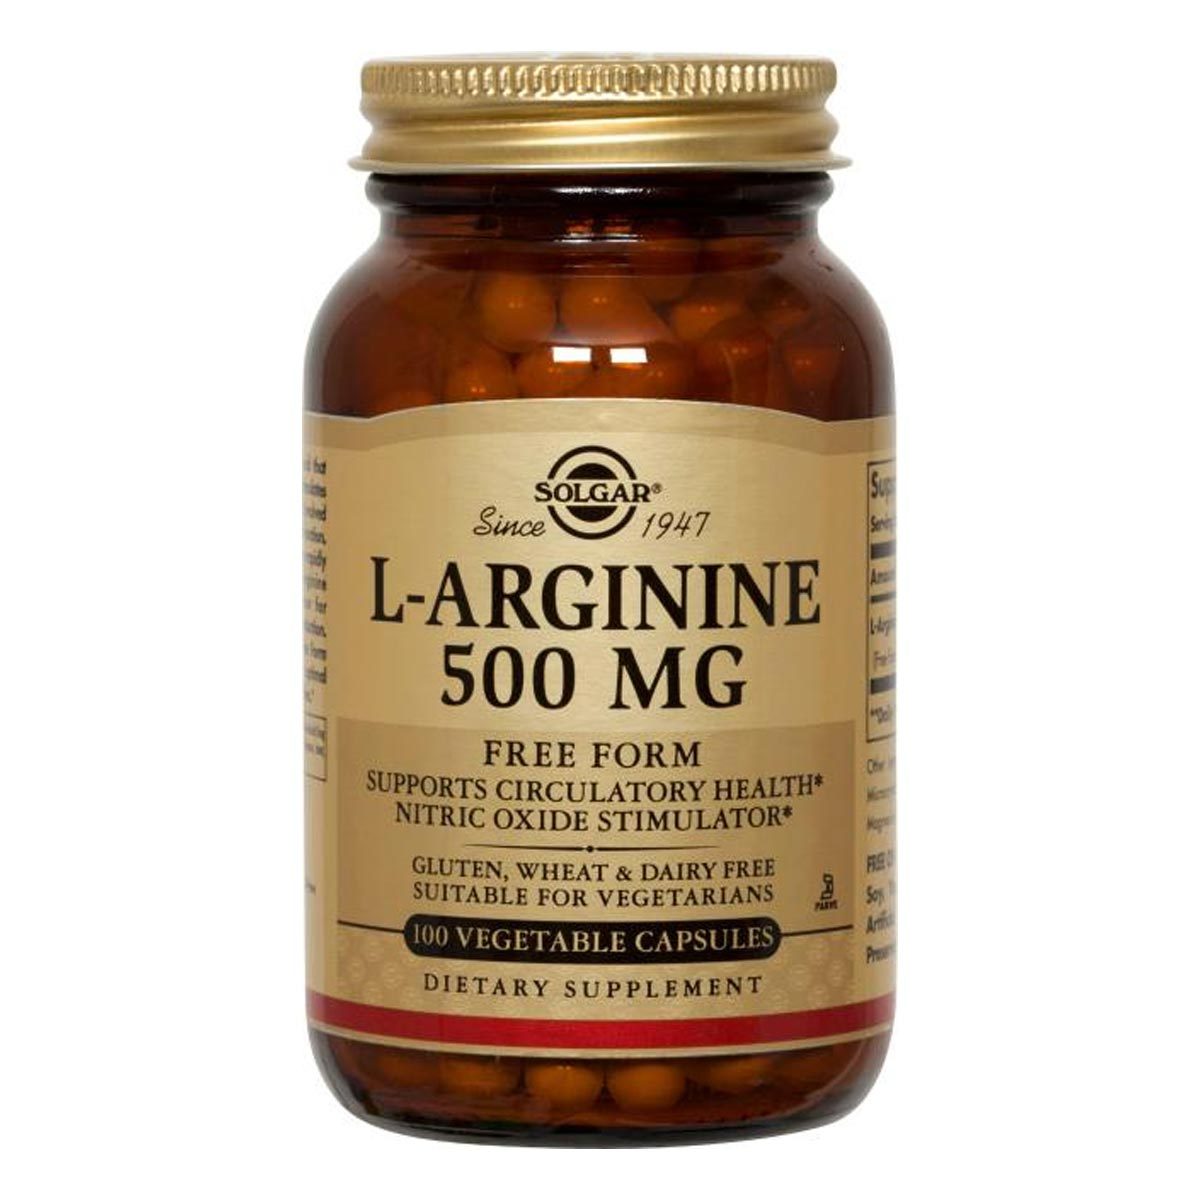 Primary image of Vegetarian L-Arginine